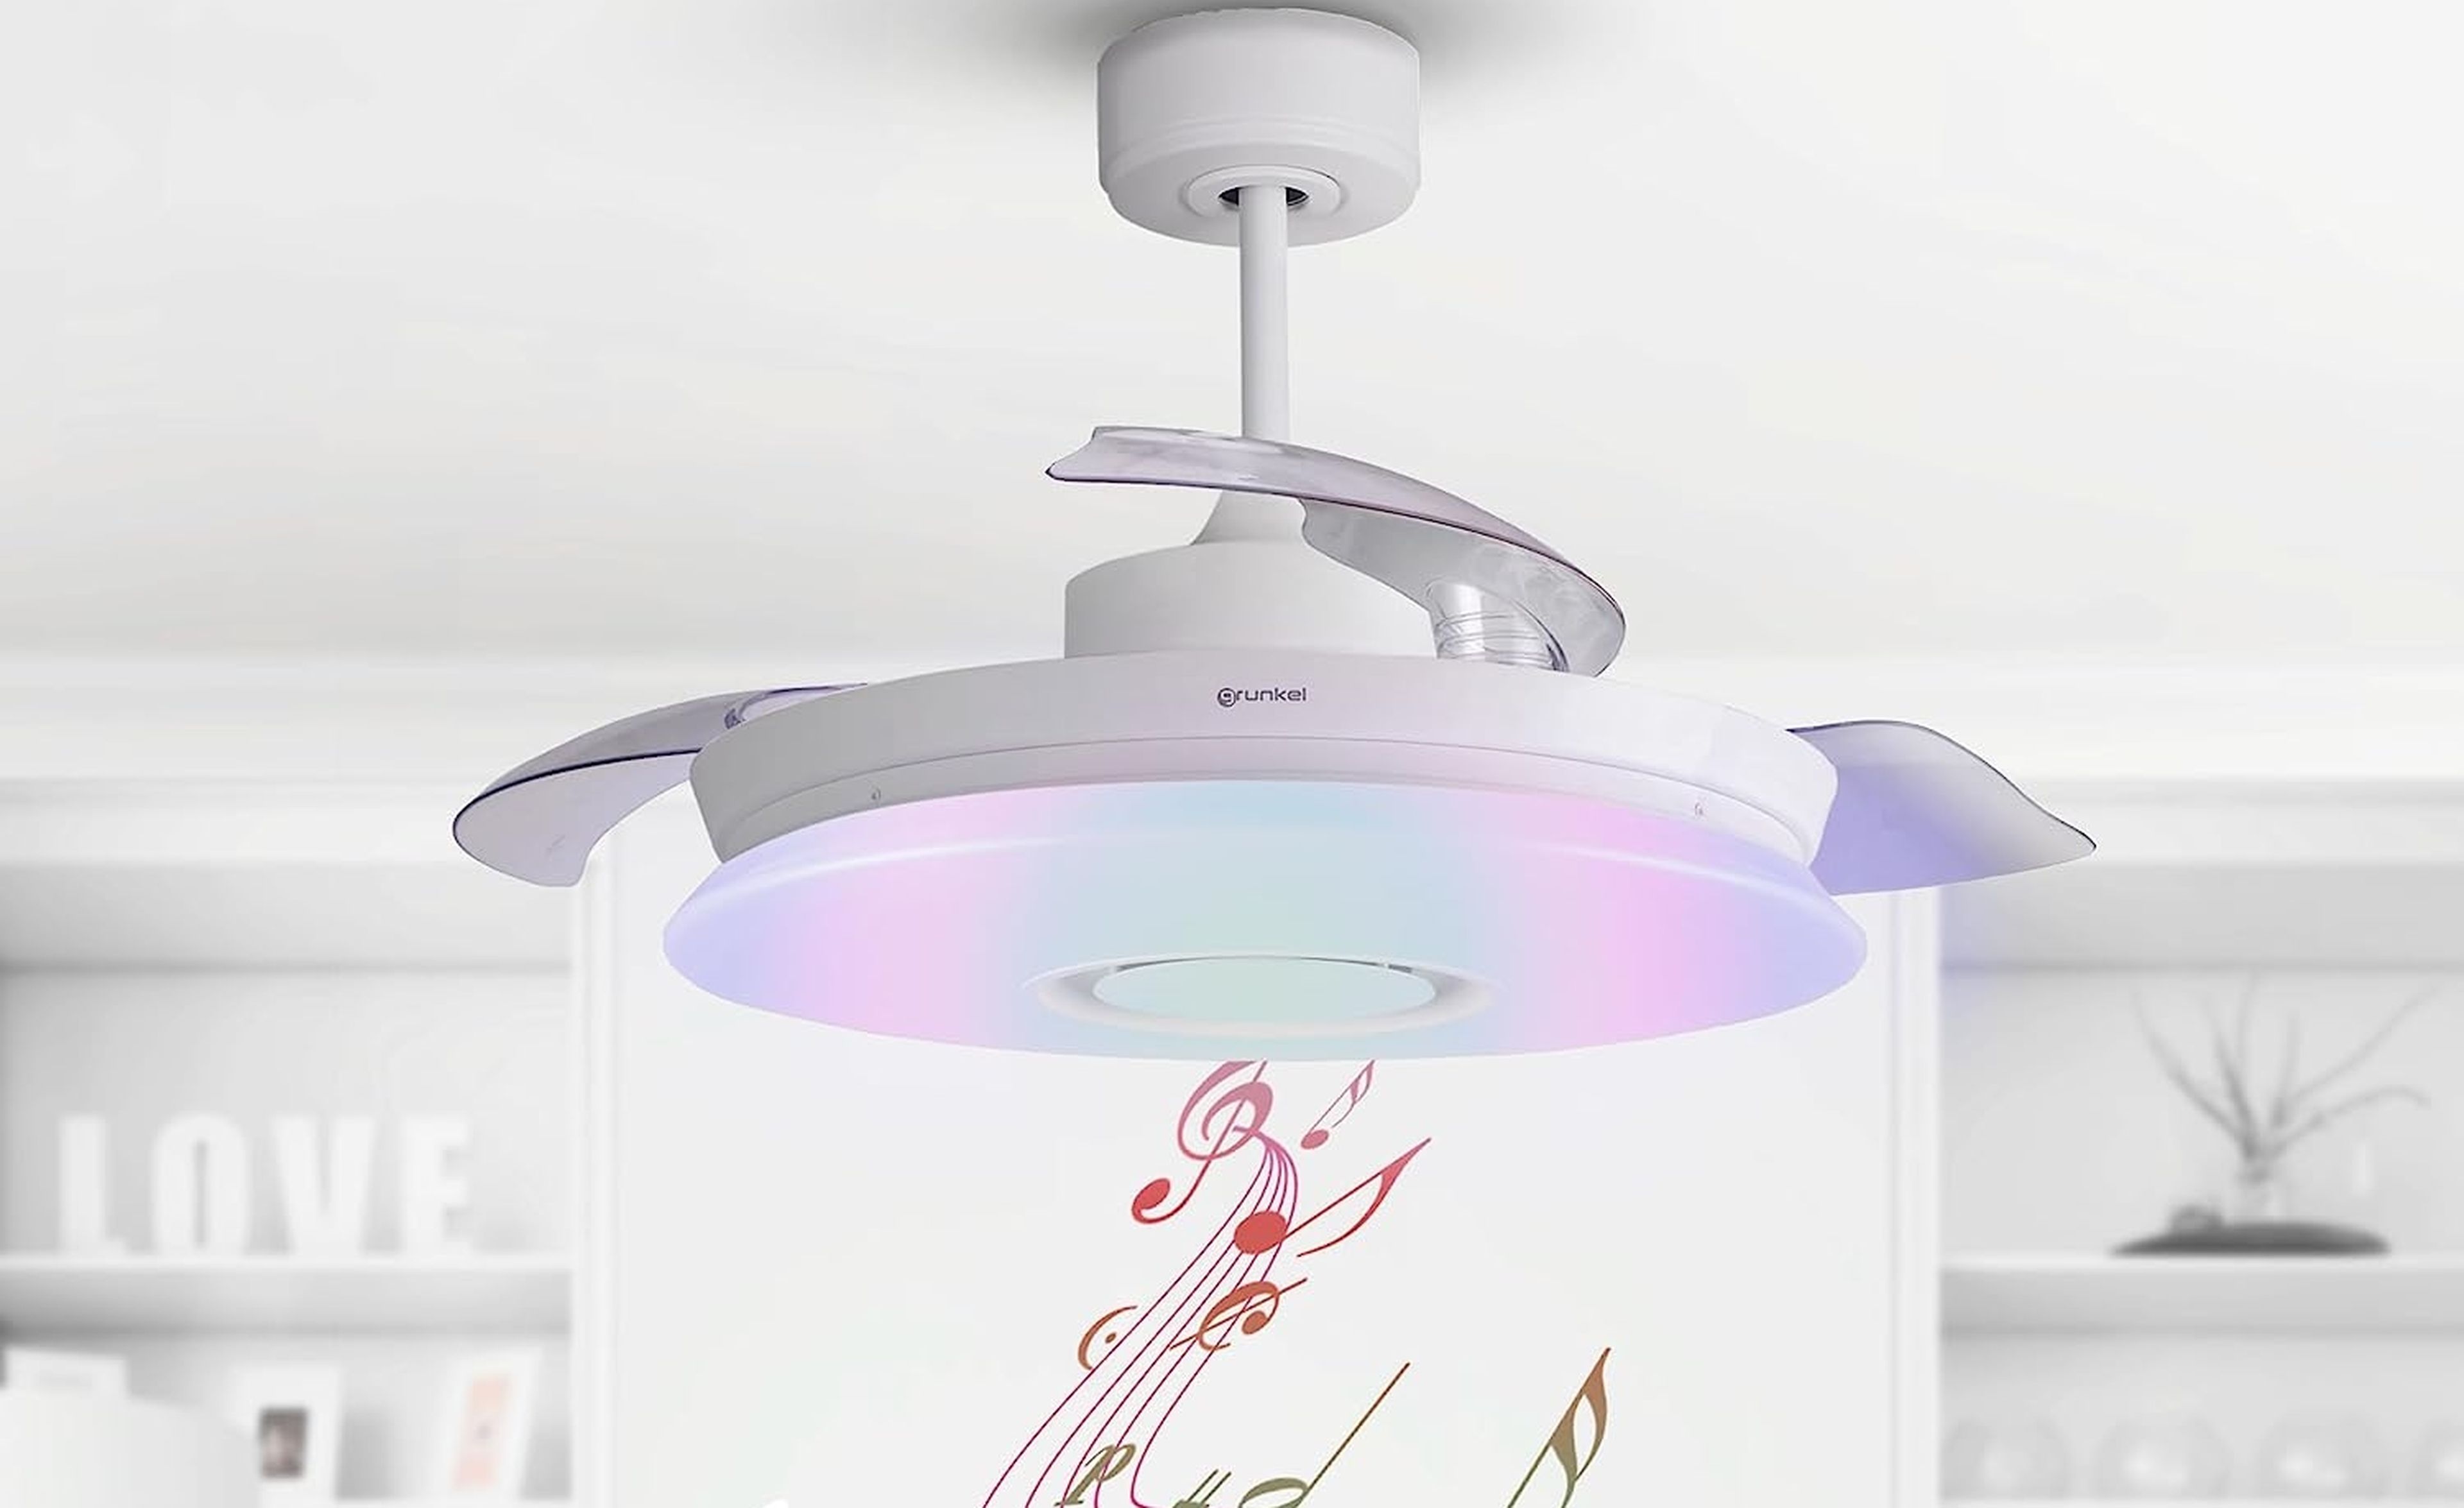 Grunkel ceiling fan with music